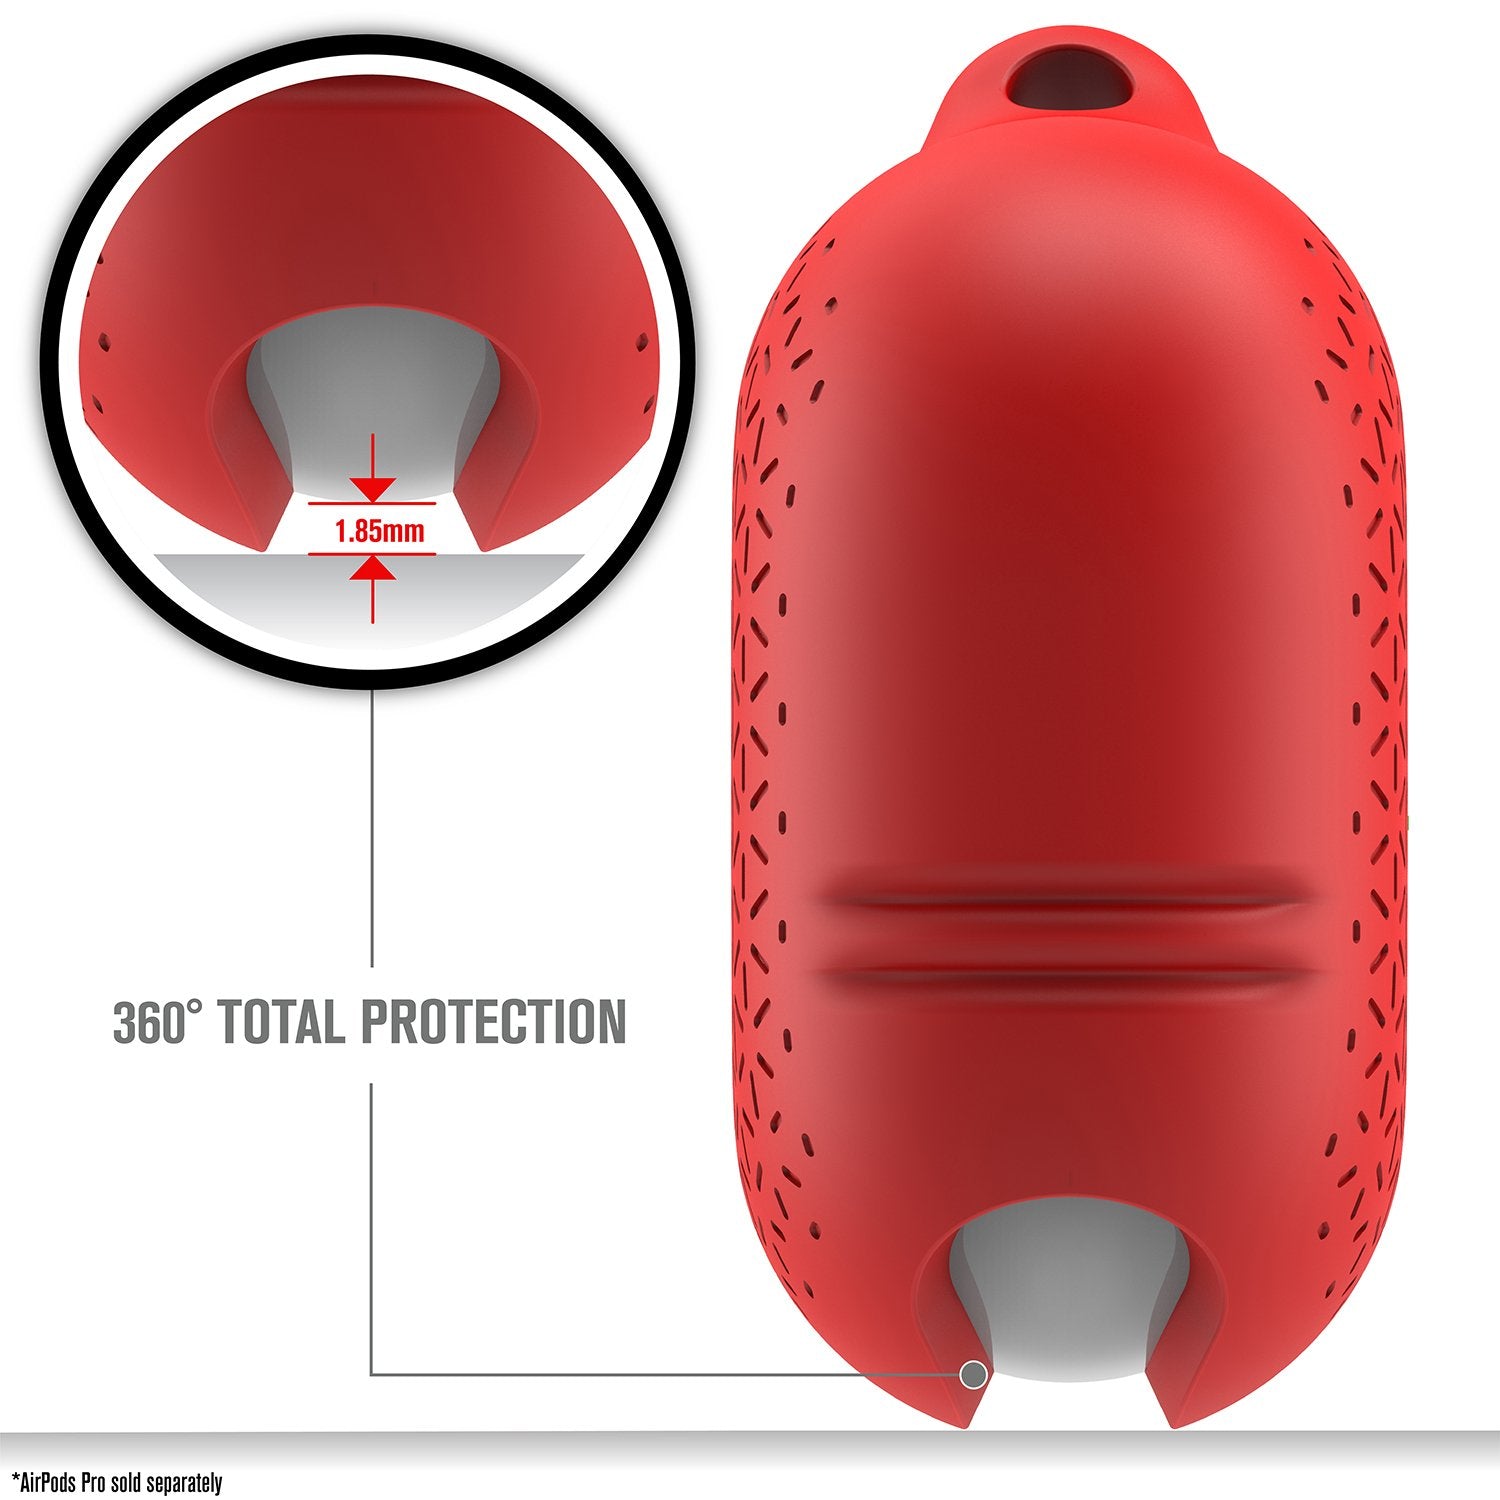 AirPods Pro (Gen 2/1) - Waterproof Case + Carabiner